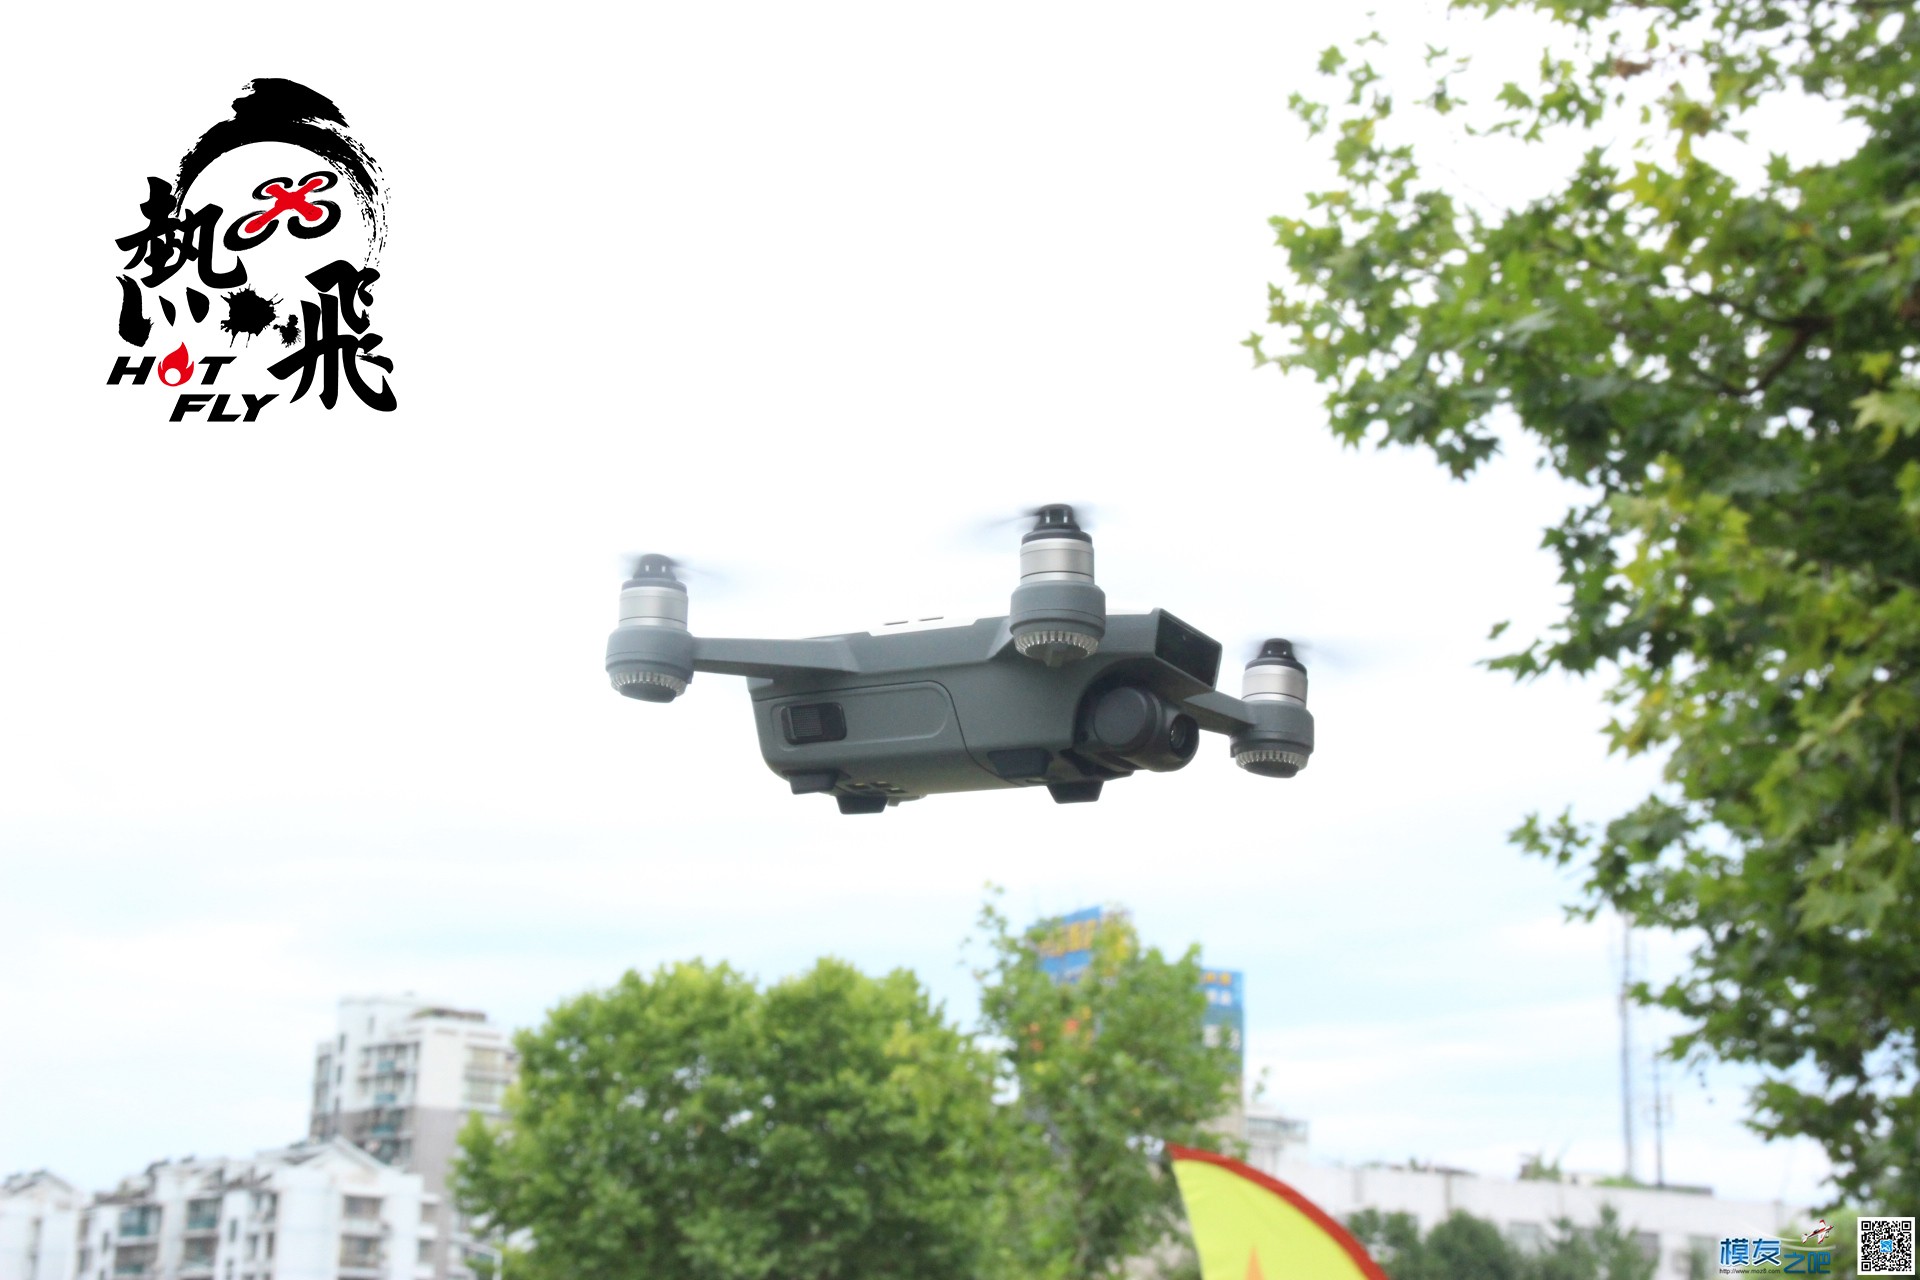 热飞视频+图片|7.9无人机总动员现场曝光各种最新机型 无人机 作者:杭州大碗 2933 